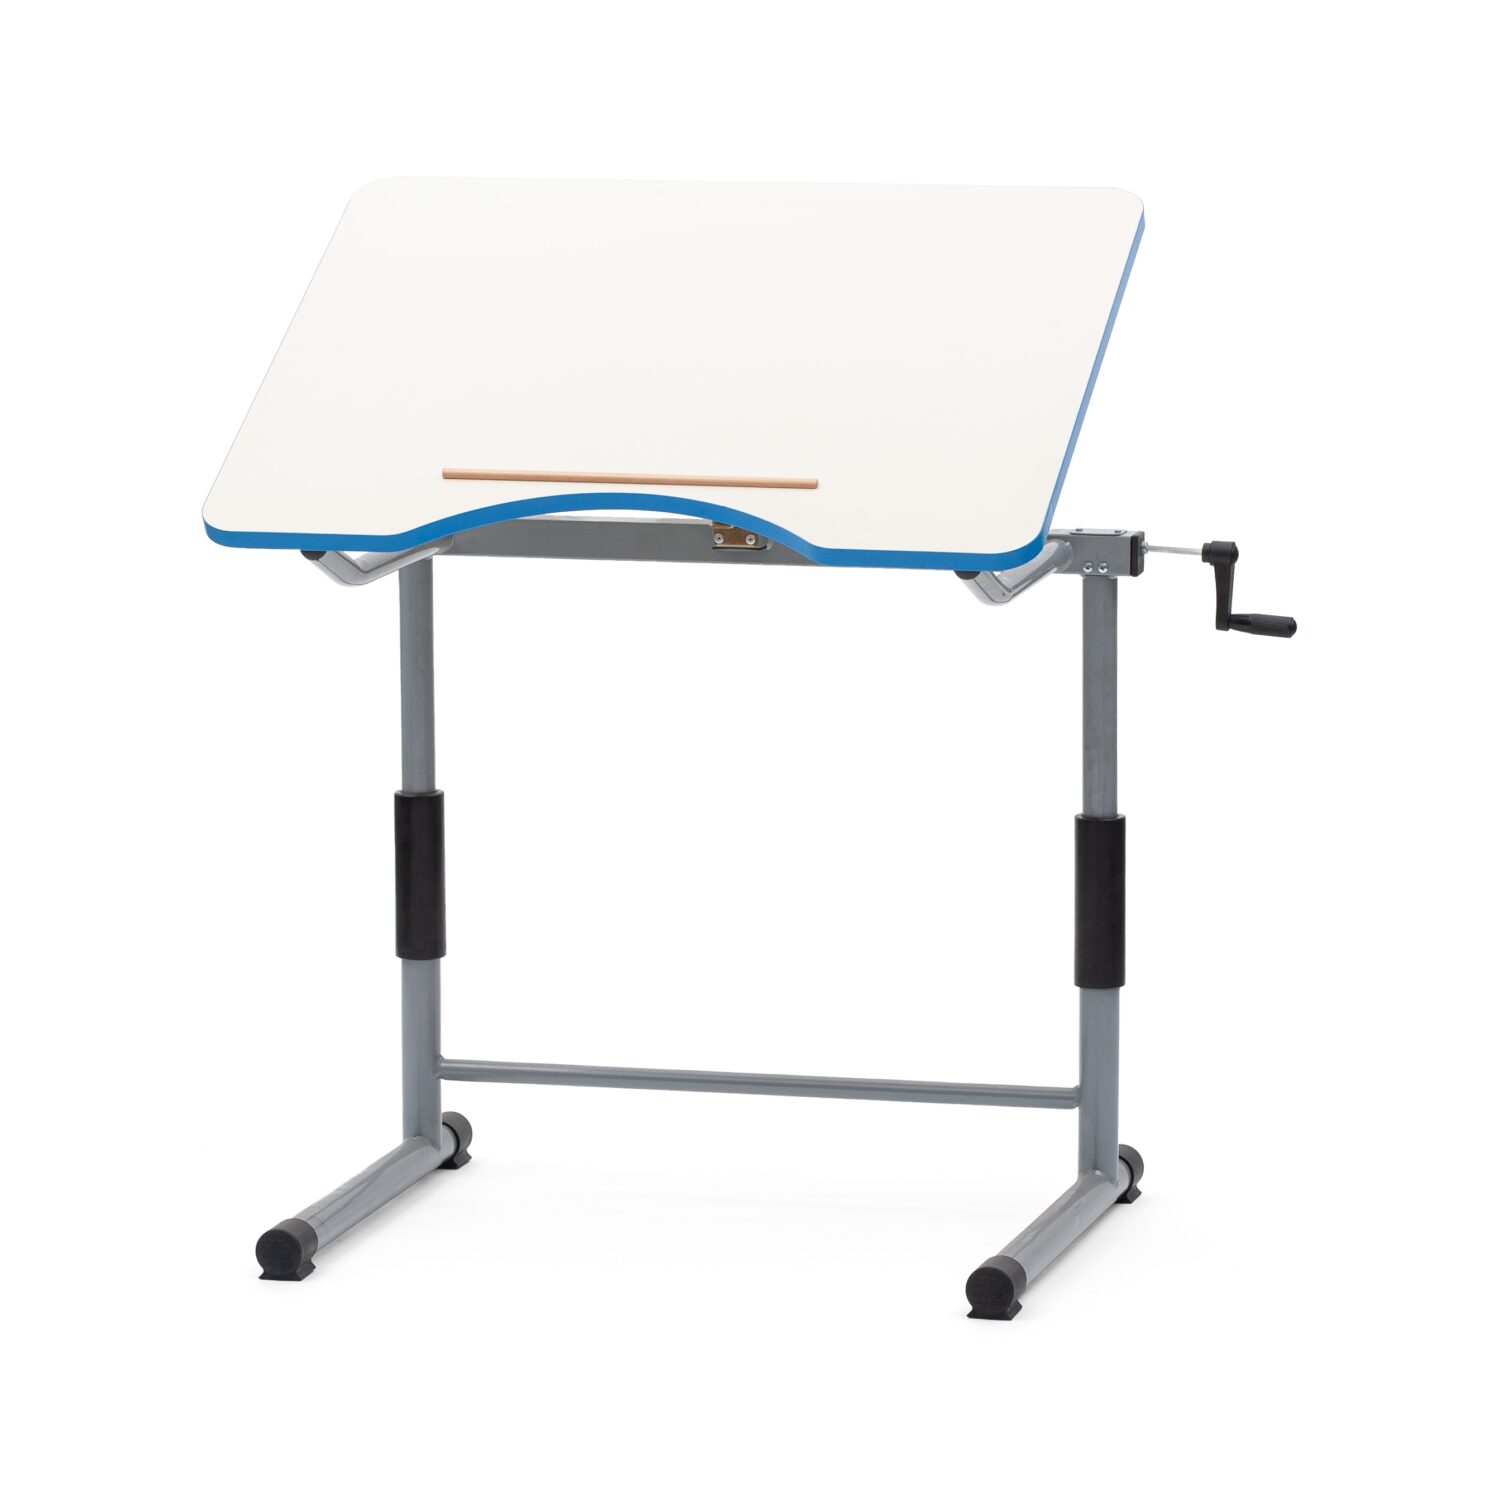 Sa651 scaled tavolo per disabili elevabile in altezza con regolazione micrometrica a manovella, piano ad inclinazione regolabile